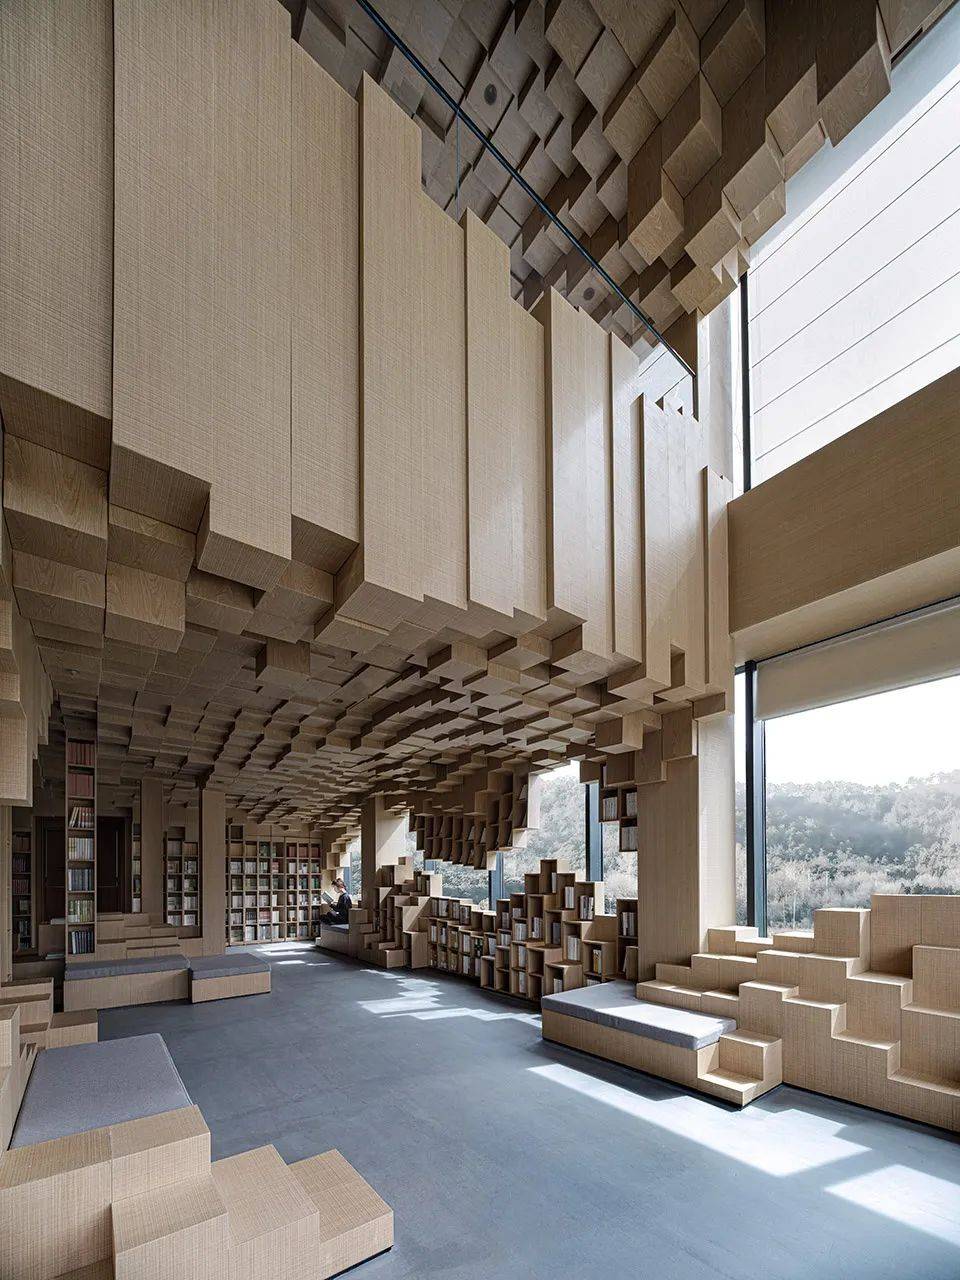 以立方体块组成的流动像素风,设计建造3d洞穴般独特艺术生活馆